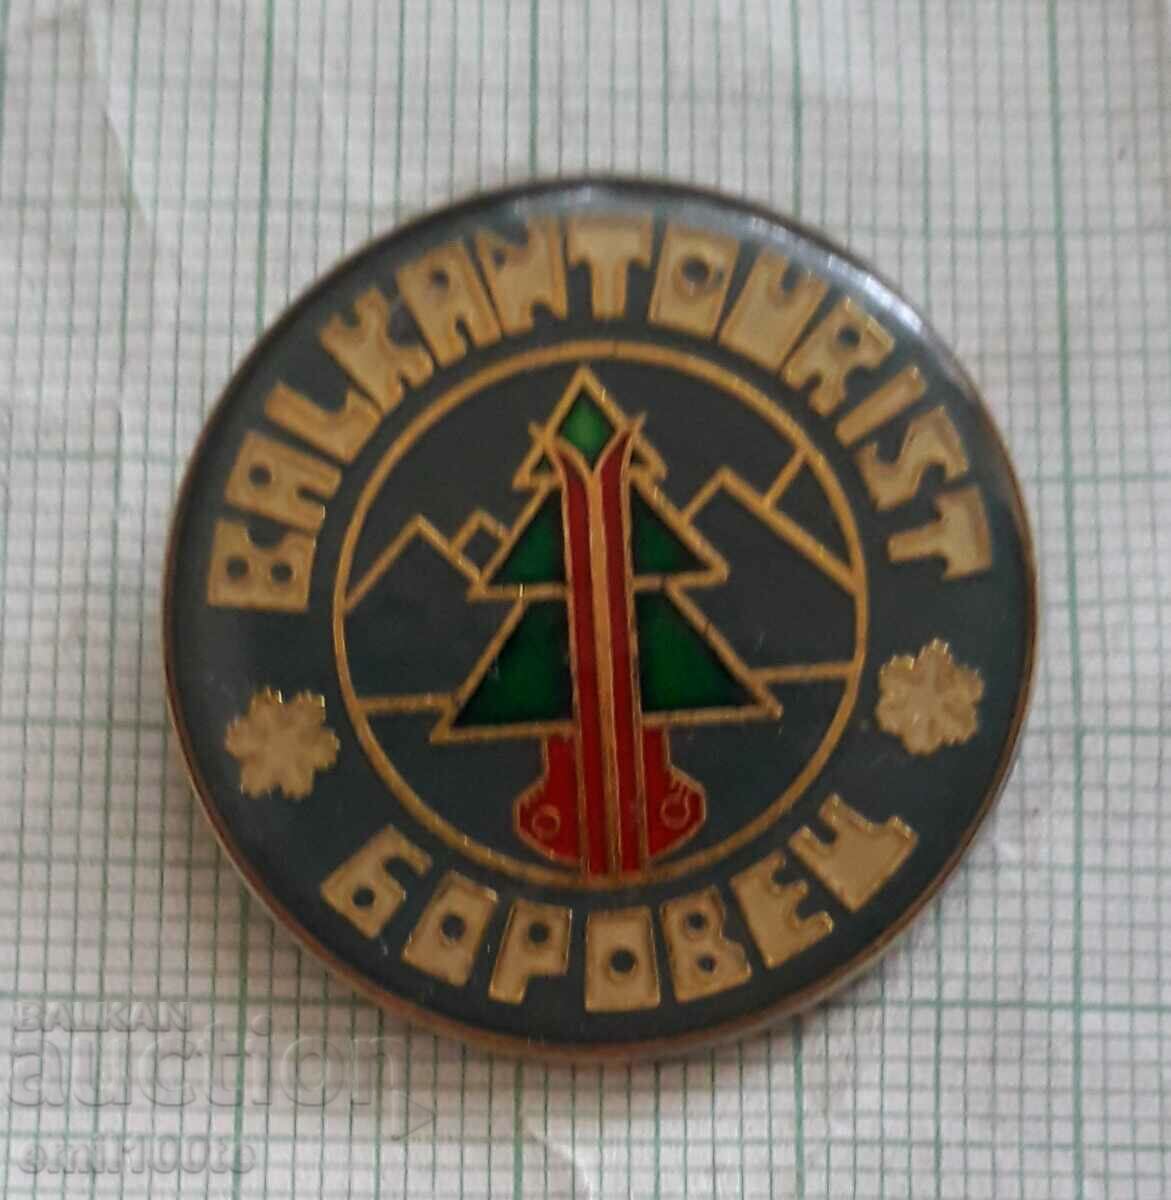 Badge - Borovets Balkantourist